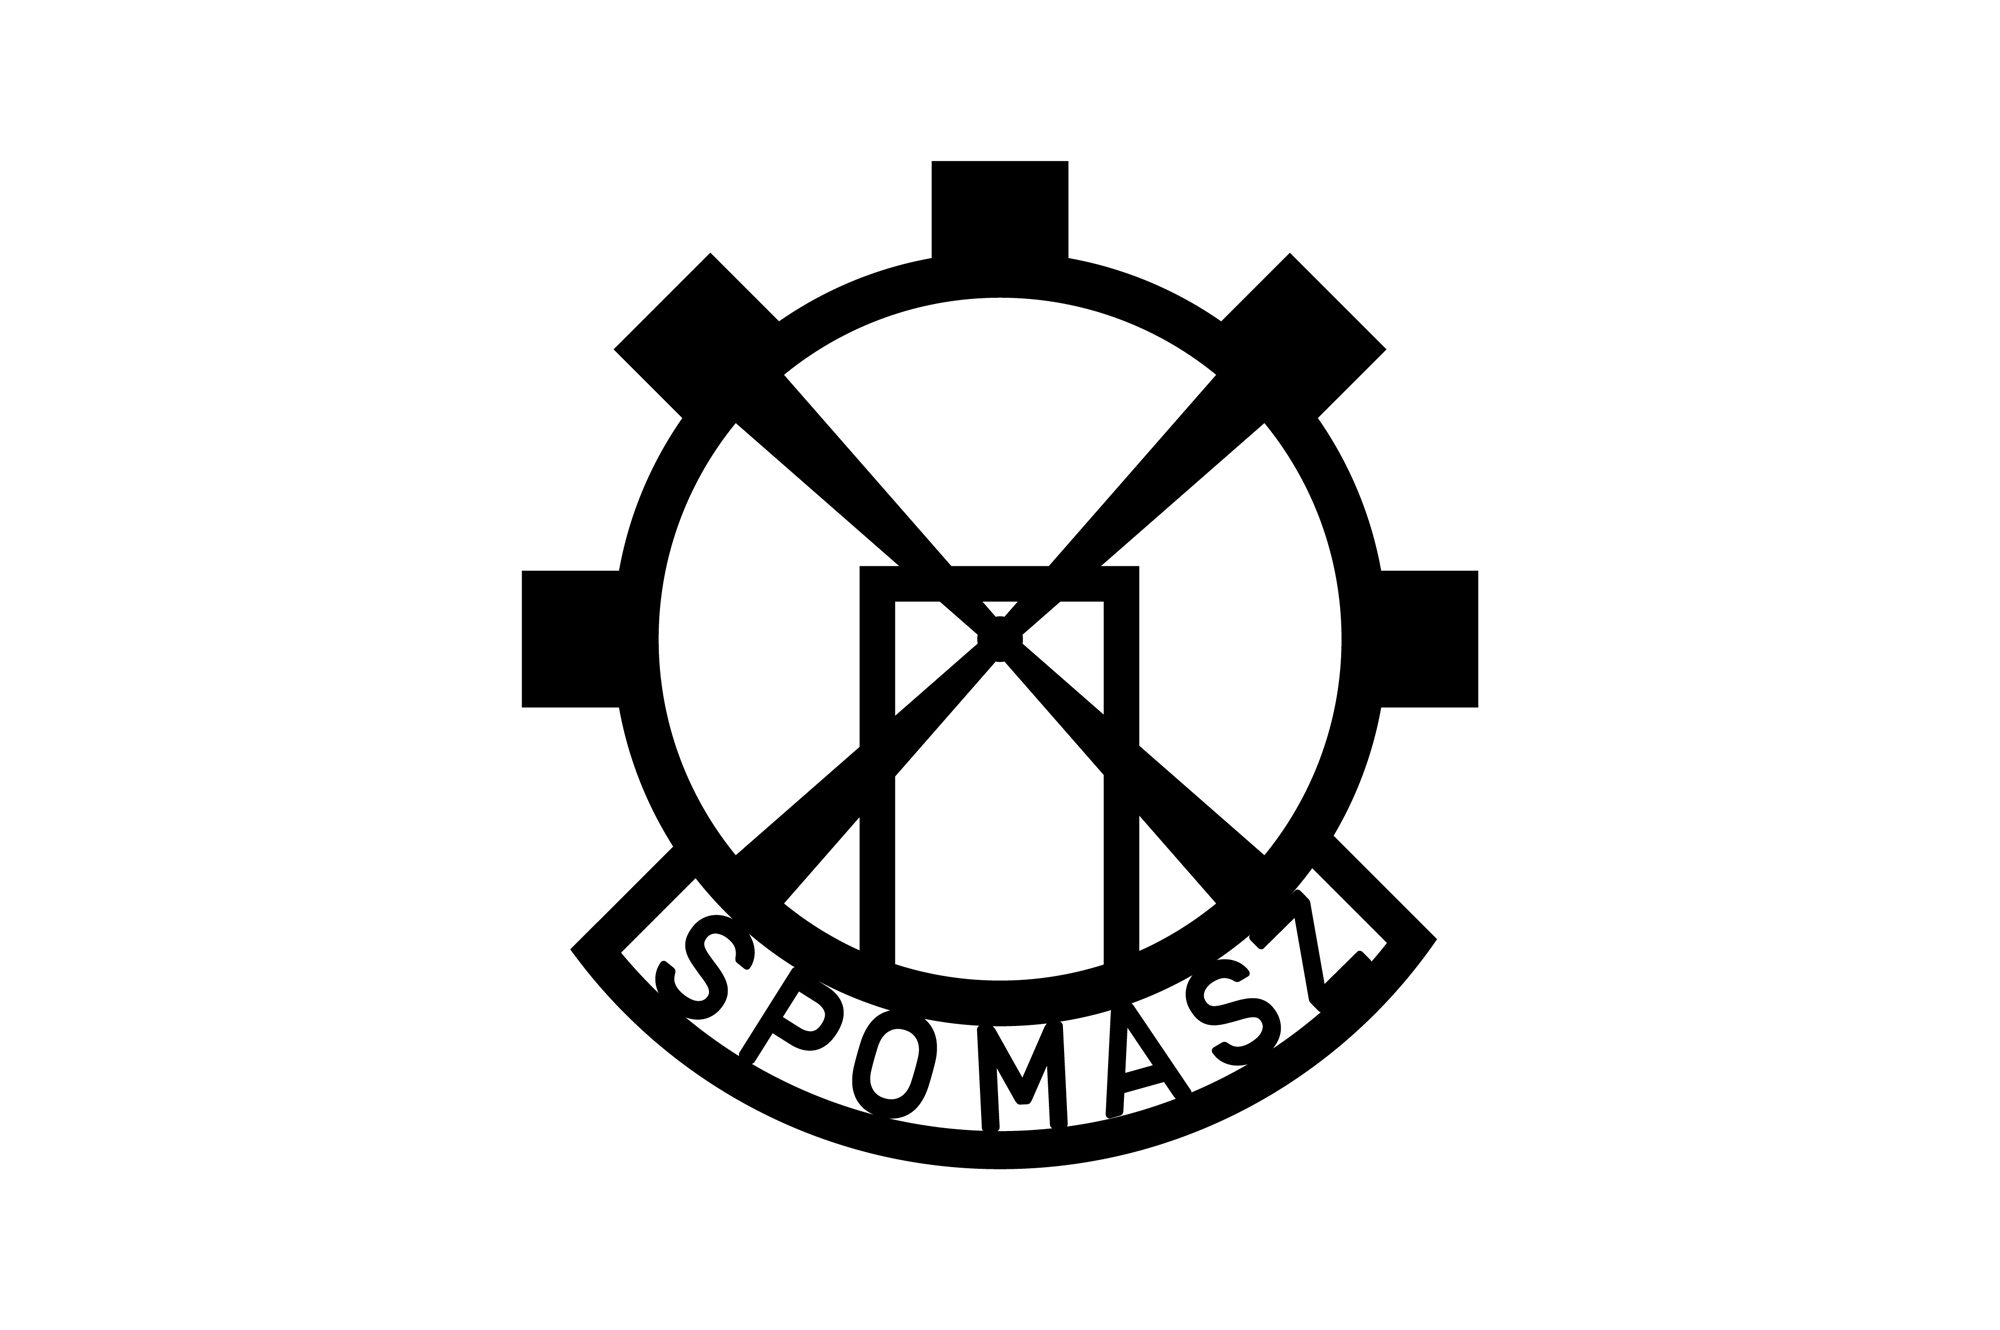 Spomasz - logo 69 PLANSZA 30x30cm EDYCJA